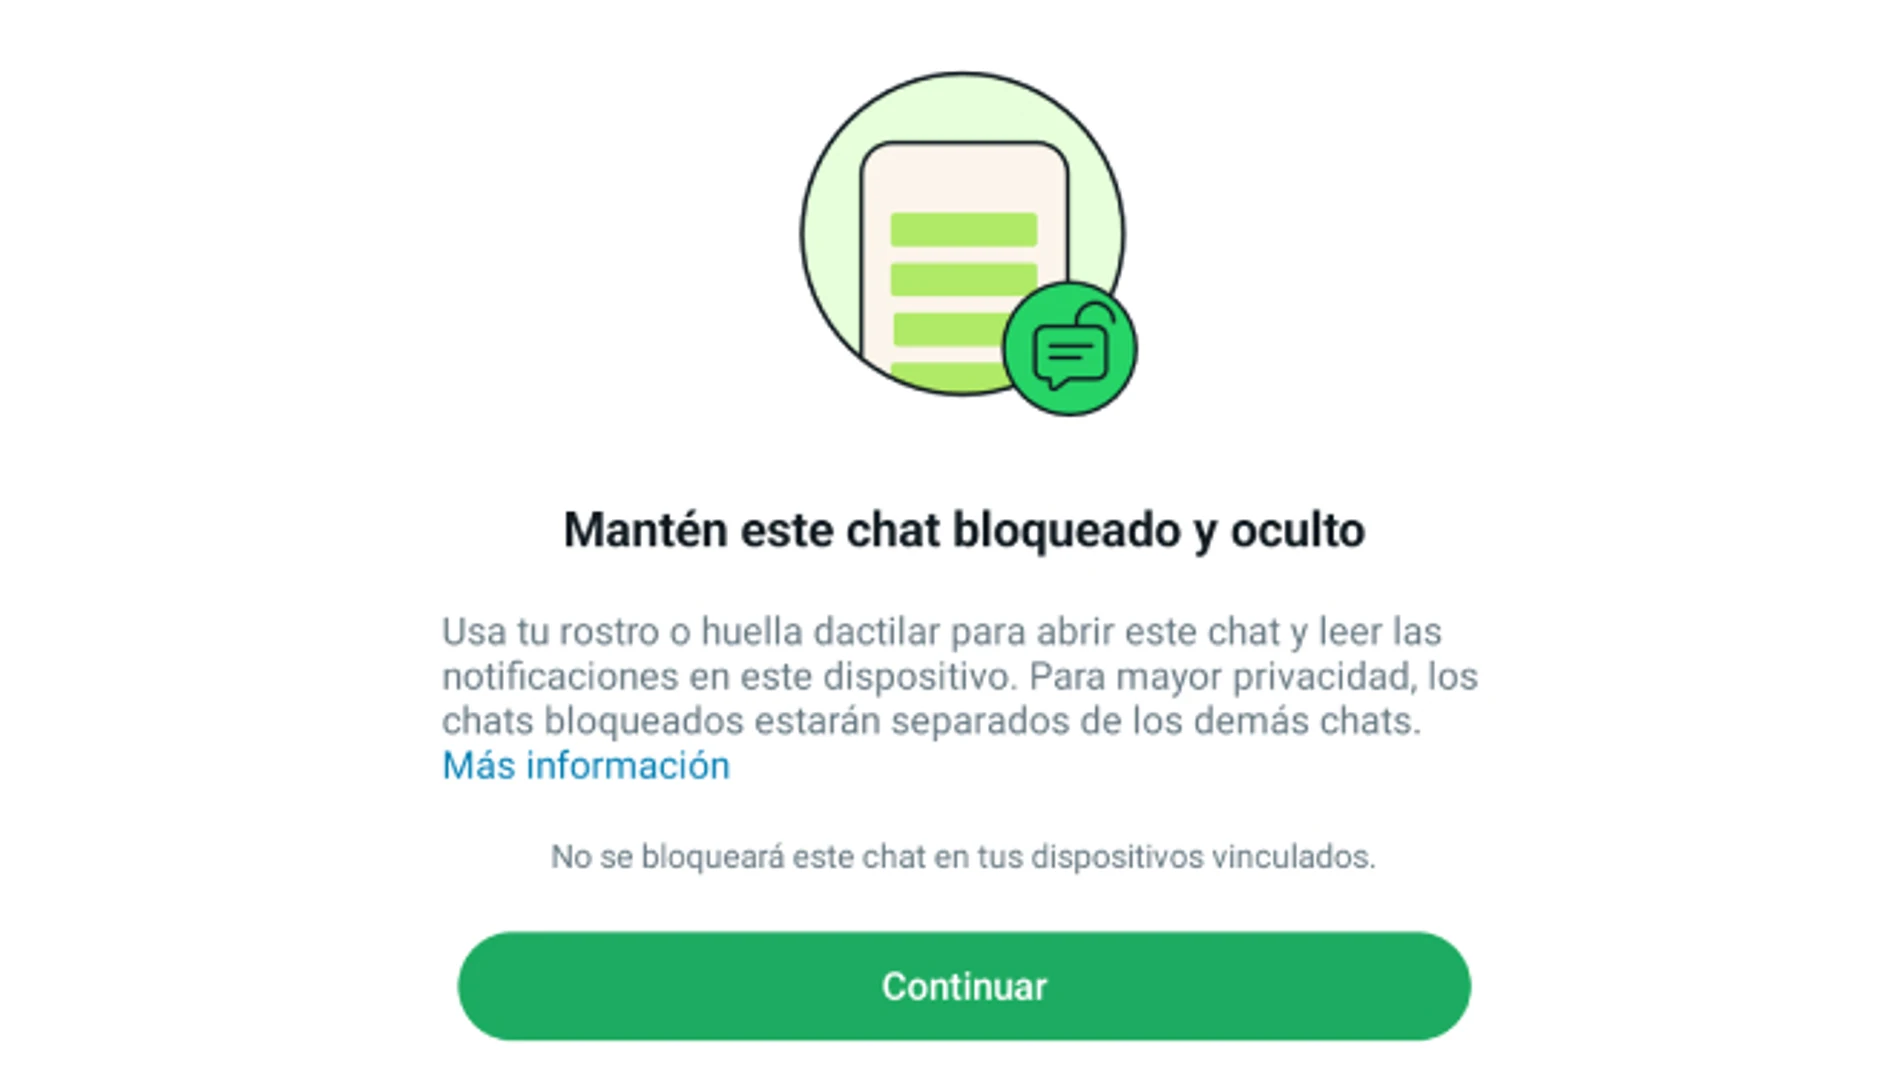 WhatsApp desarrolla una solución para el fallo de seguridad de los chats bloqueados.